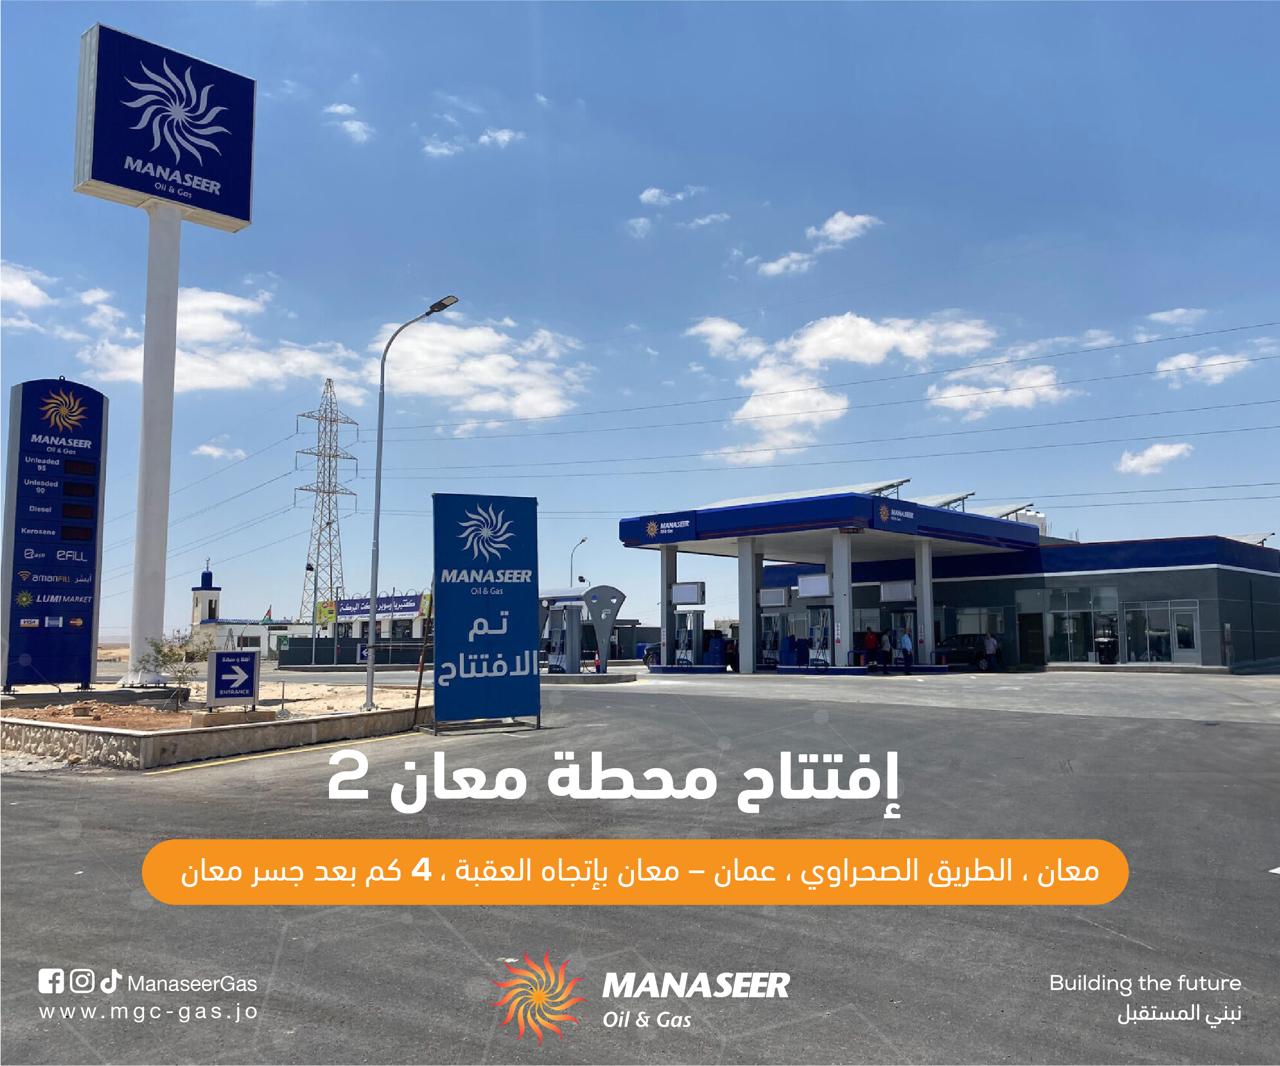 افتتاح محطة وقود جديدة تابعة لشركة المناصير للزيوت والمحروقات باسم محطة معان 2